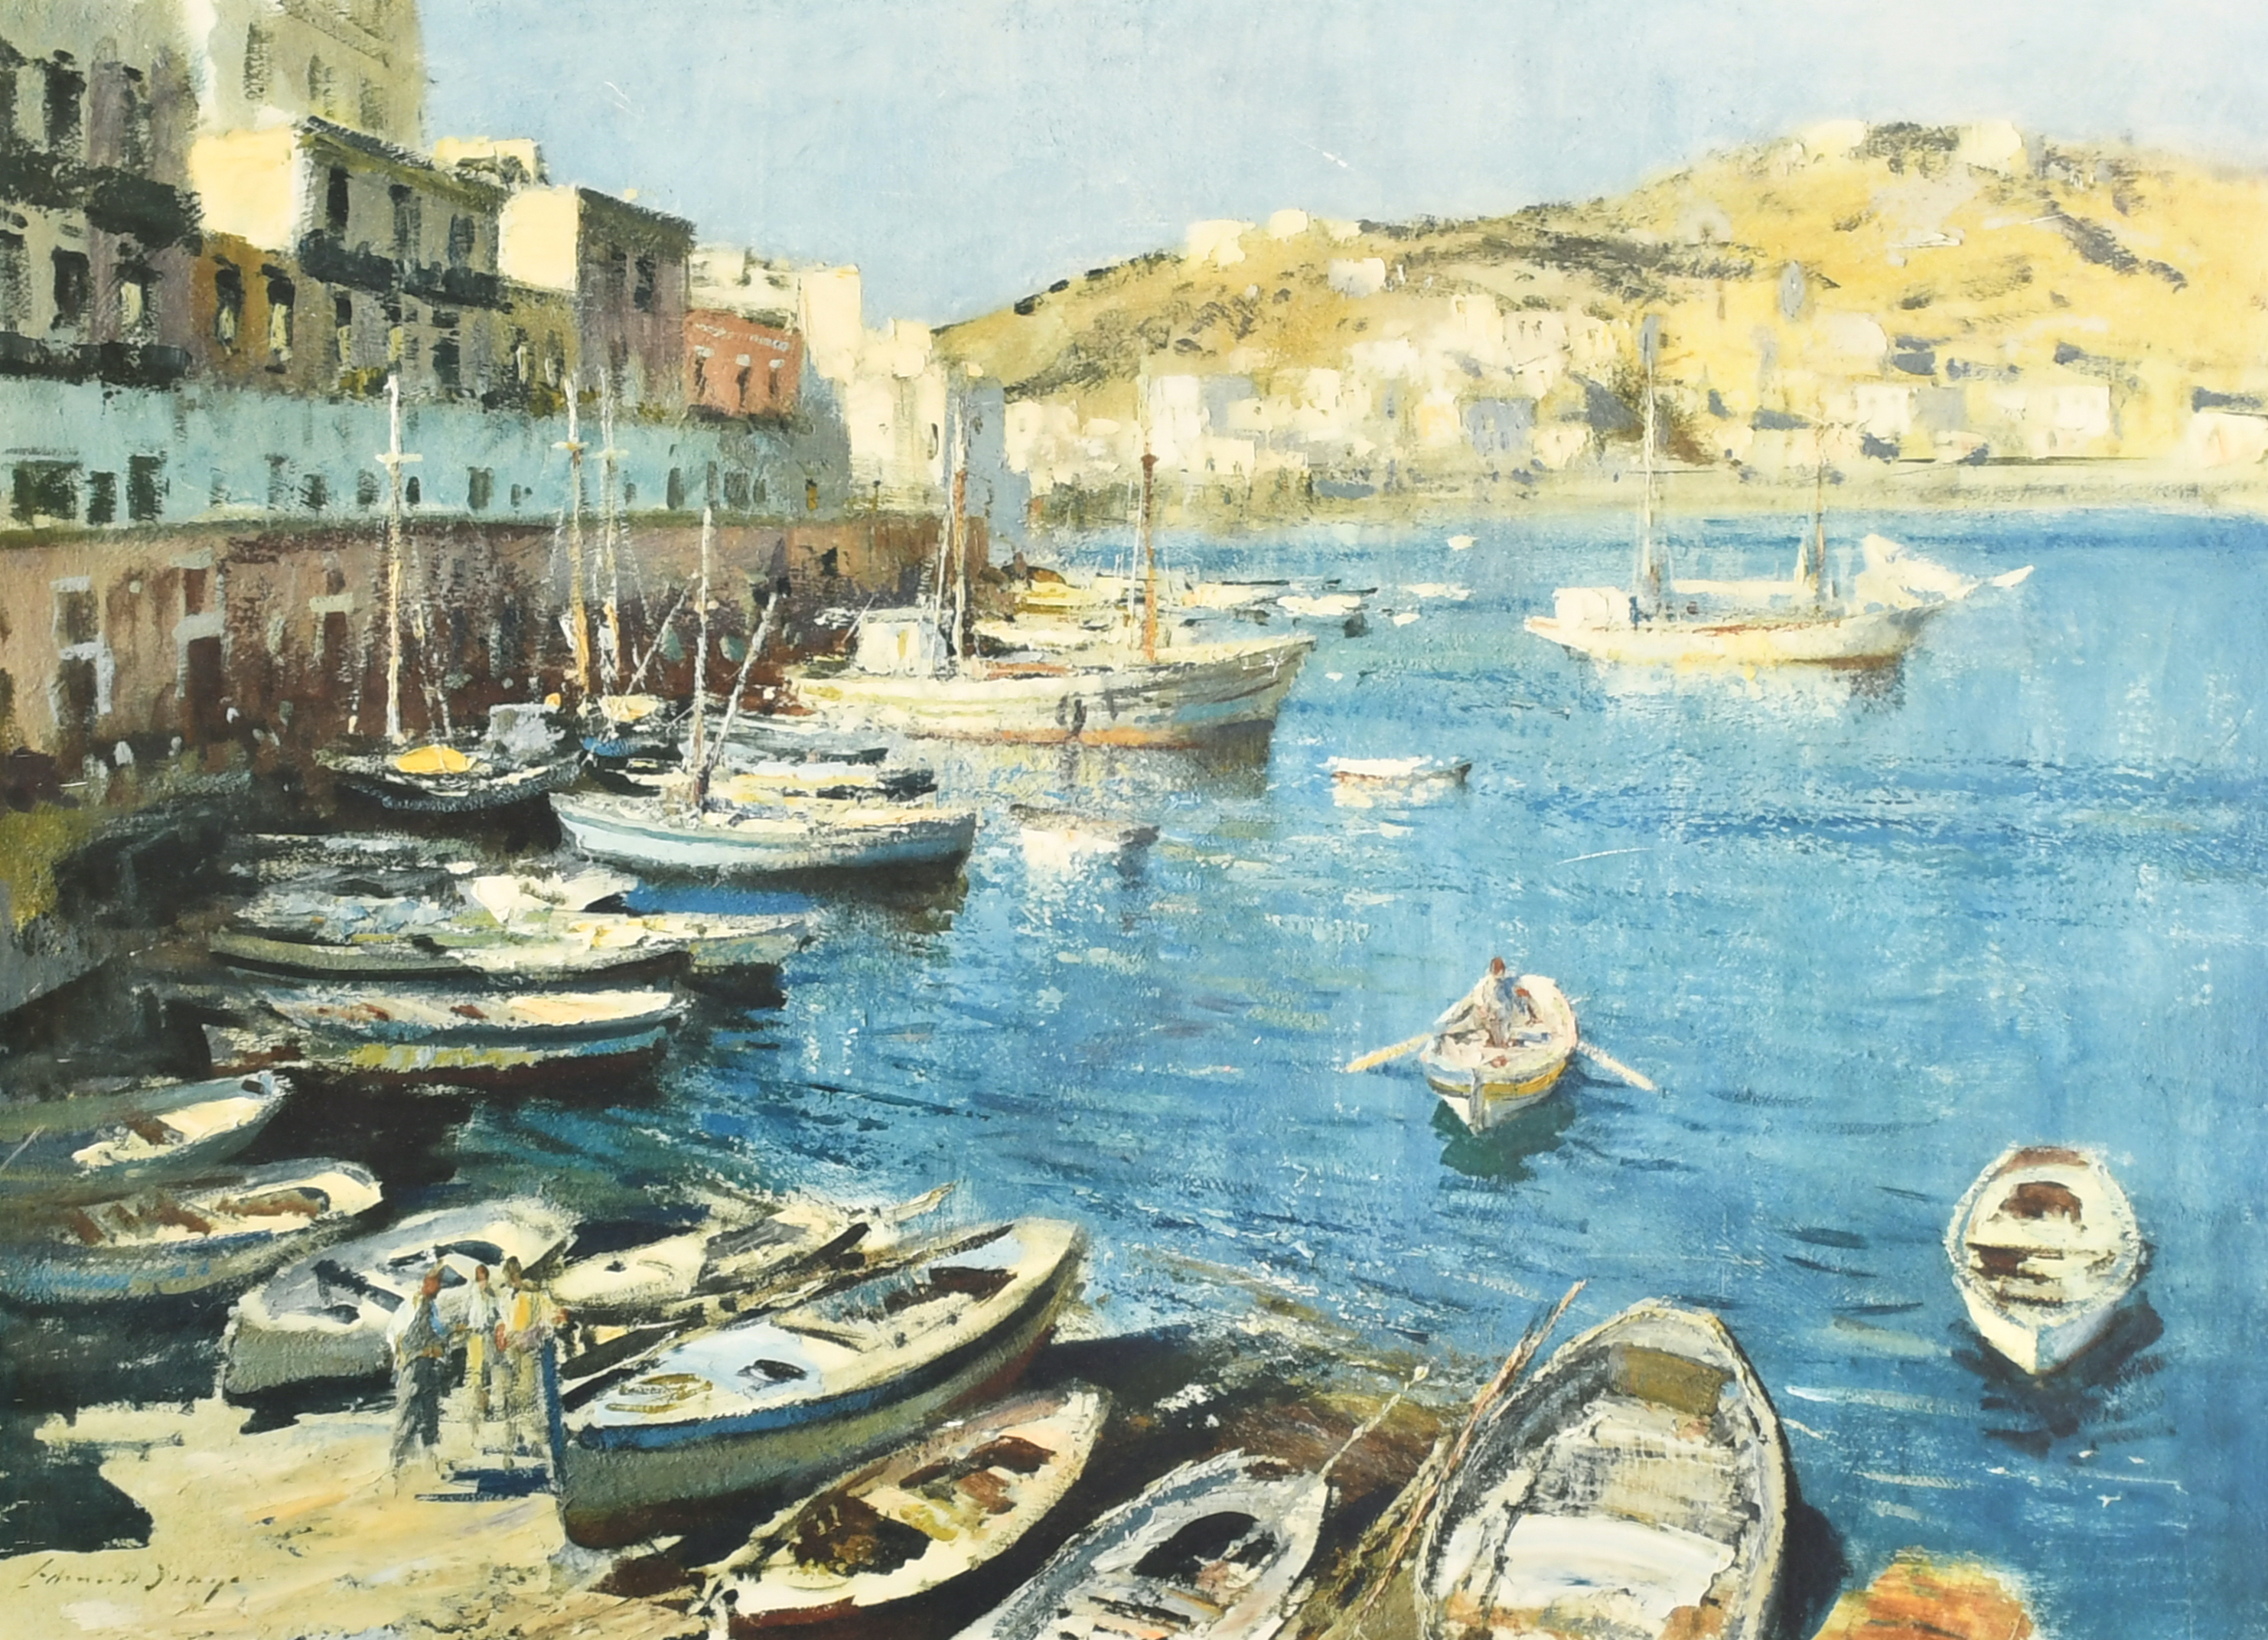 Edward Brian Seago (1910-1974) British. "The Port of Ponza", Lithograph with printer's guild